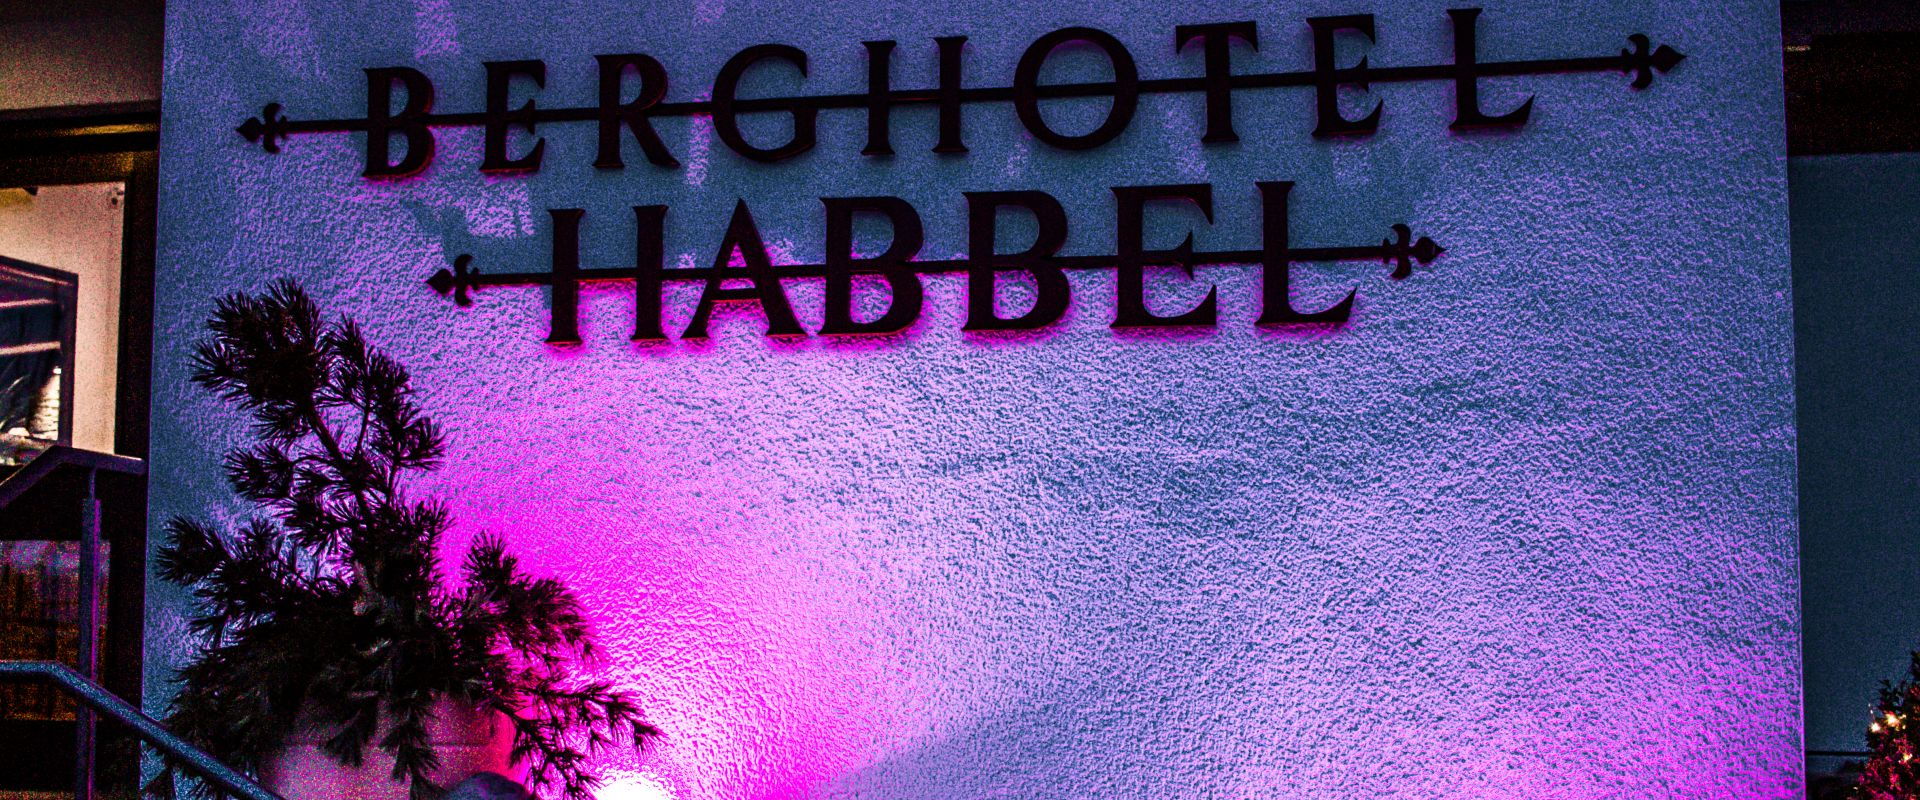 Berghotel Habbel Logo an der Außenwand